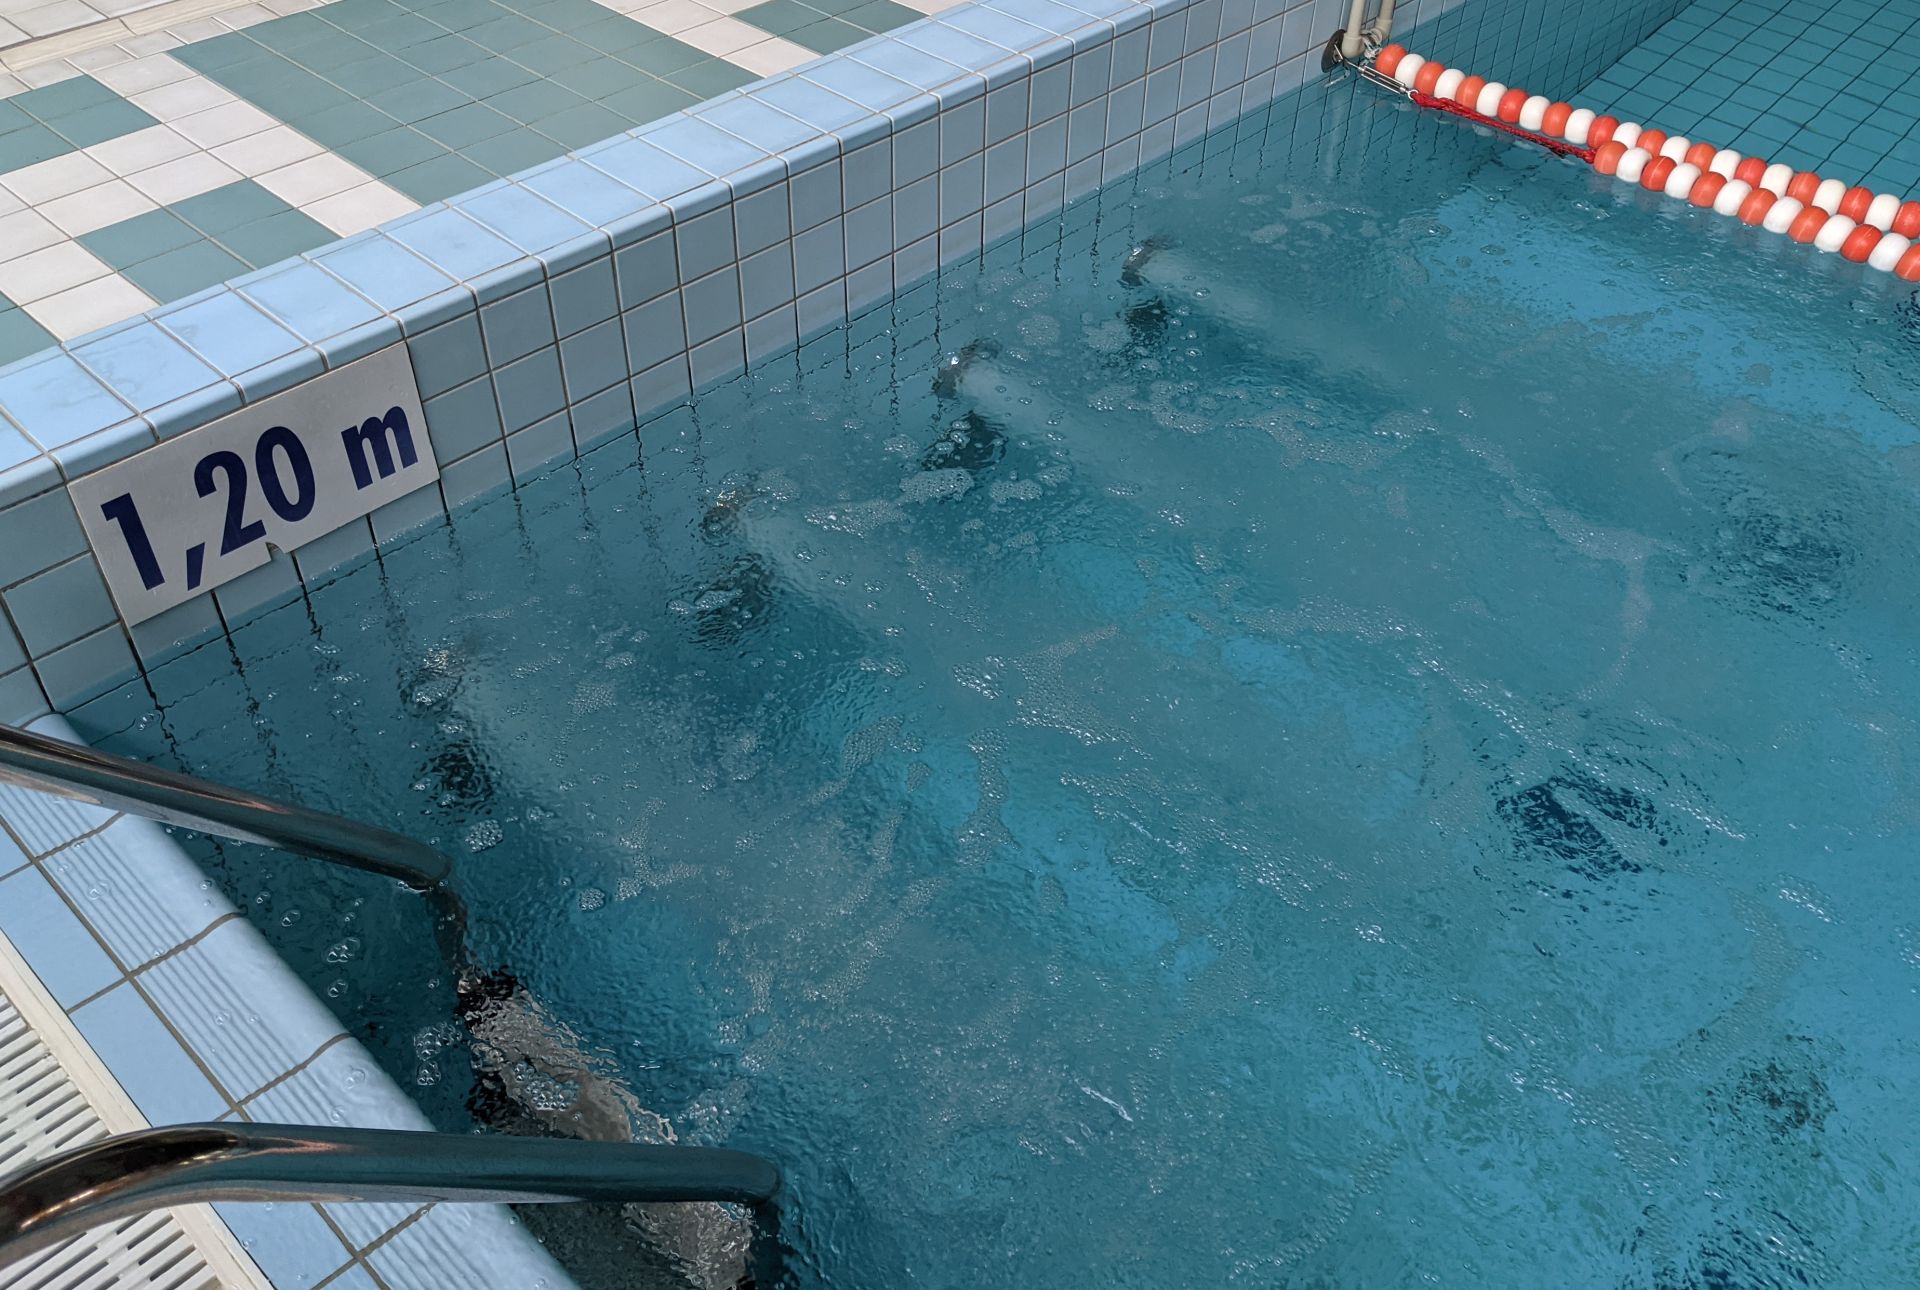 Masaż ścienny czterodyszowy umiejscowiony w basenie rekreacyjnym na ścianie basenu pod wodą, widoczne cztery strumienie wody wydobywające się z dysz.